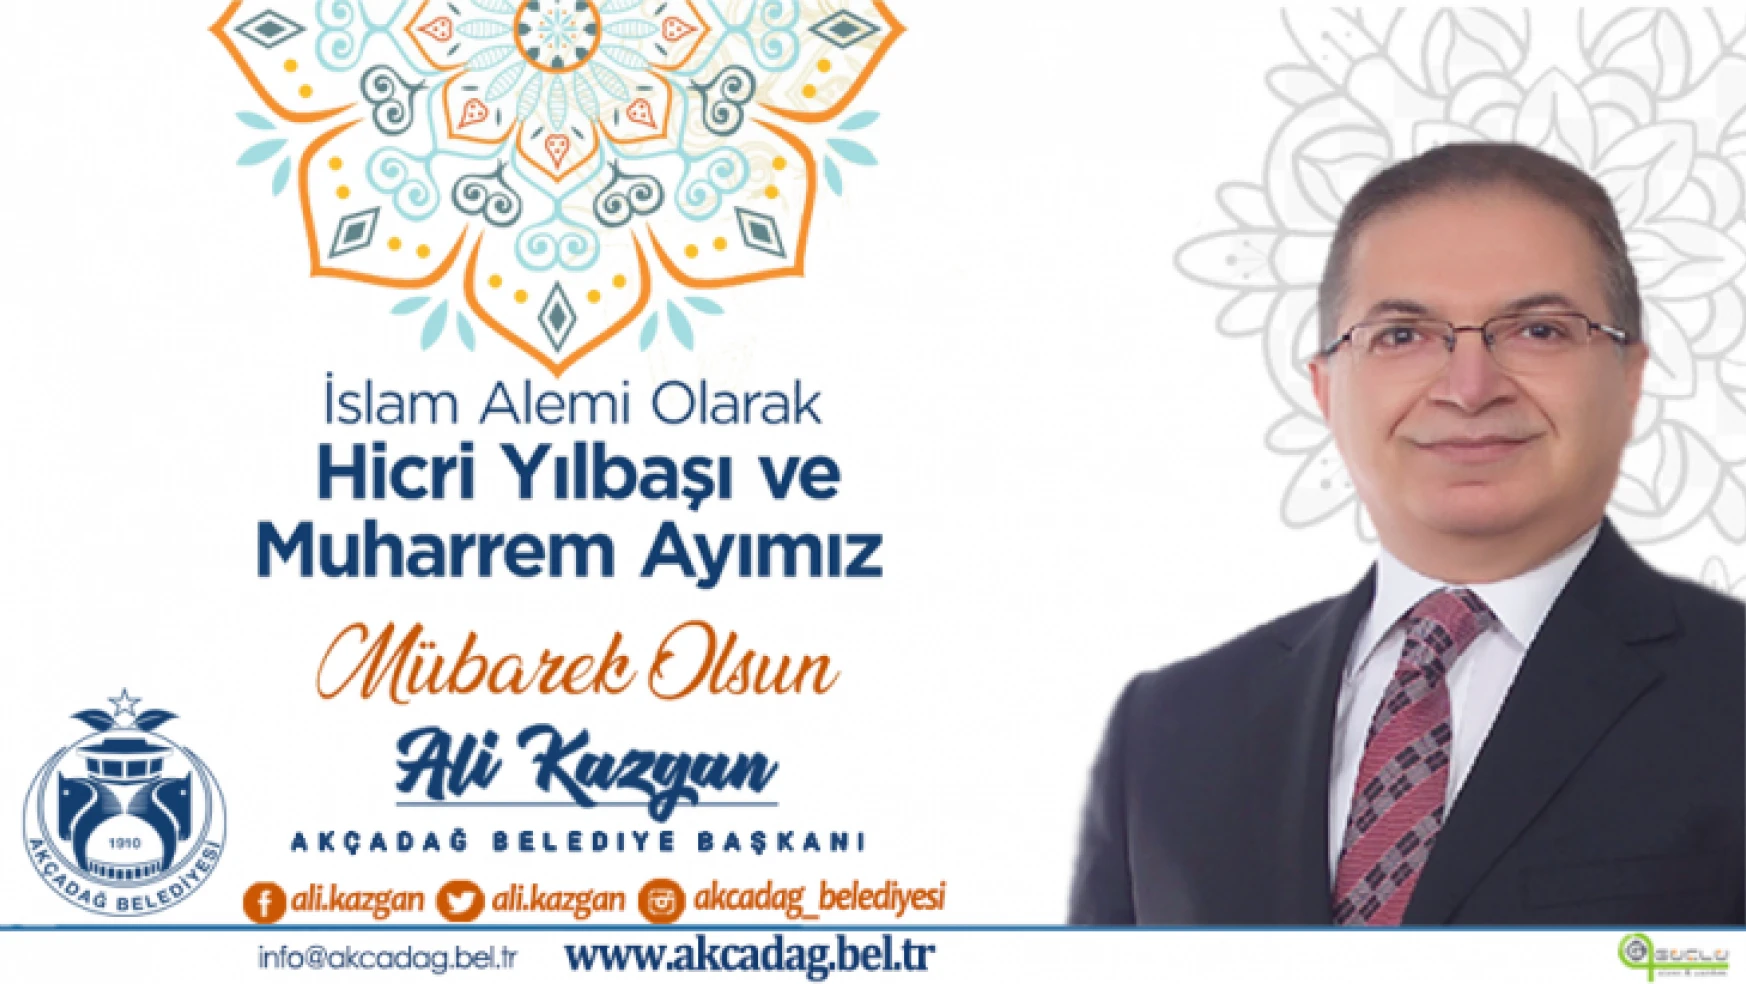 Başkan Kazgan'ın Hicri Yılbaşı ve Muharrem Ayı Mesajı